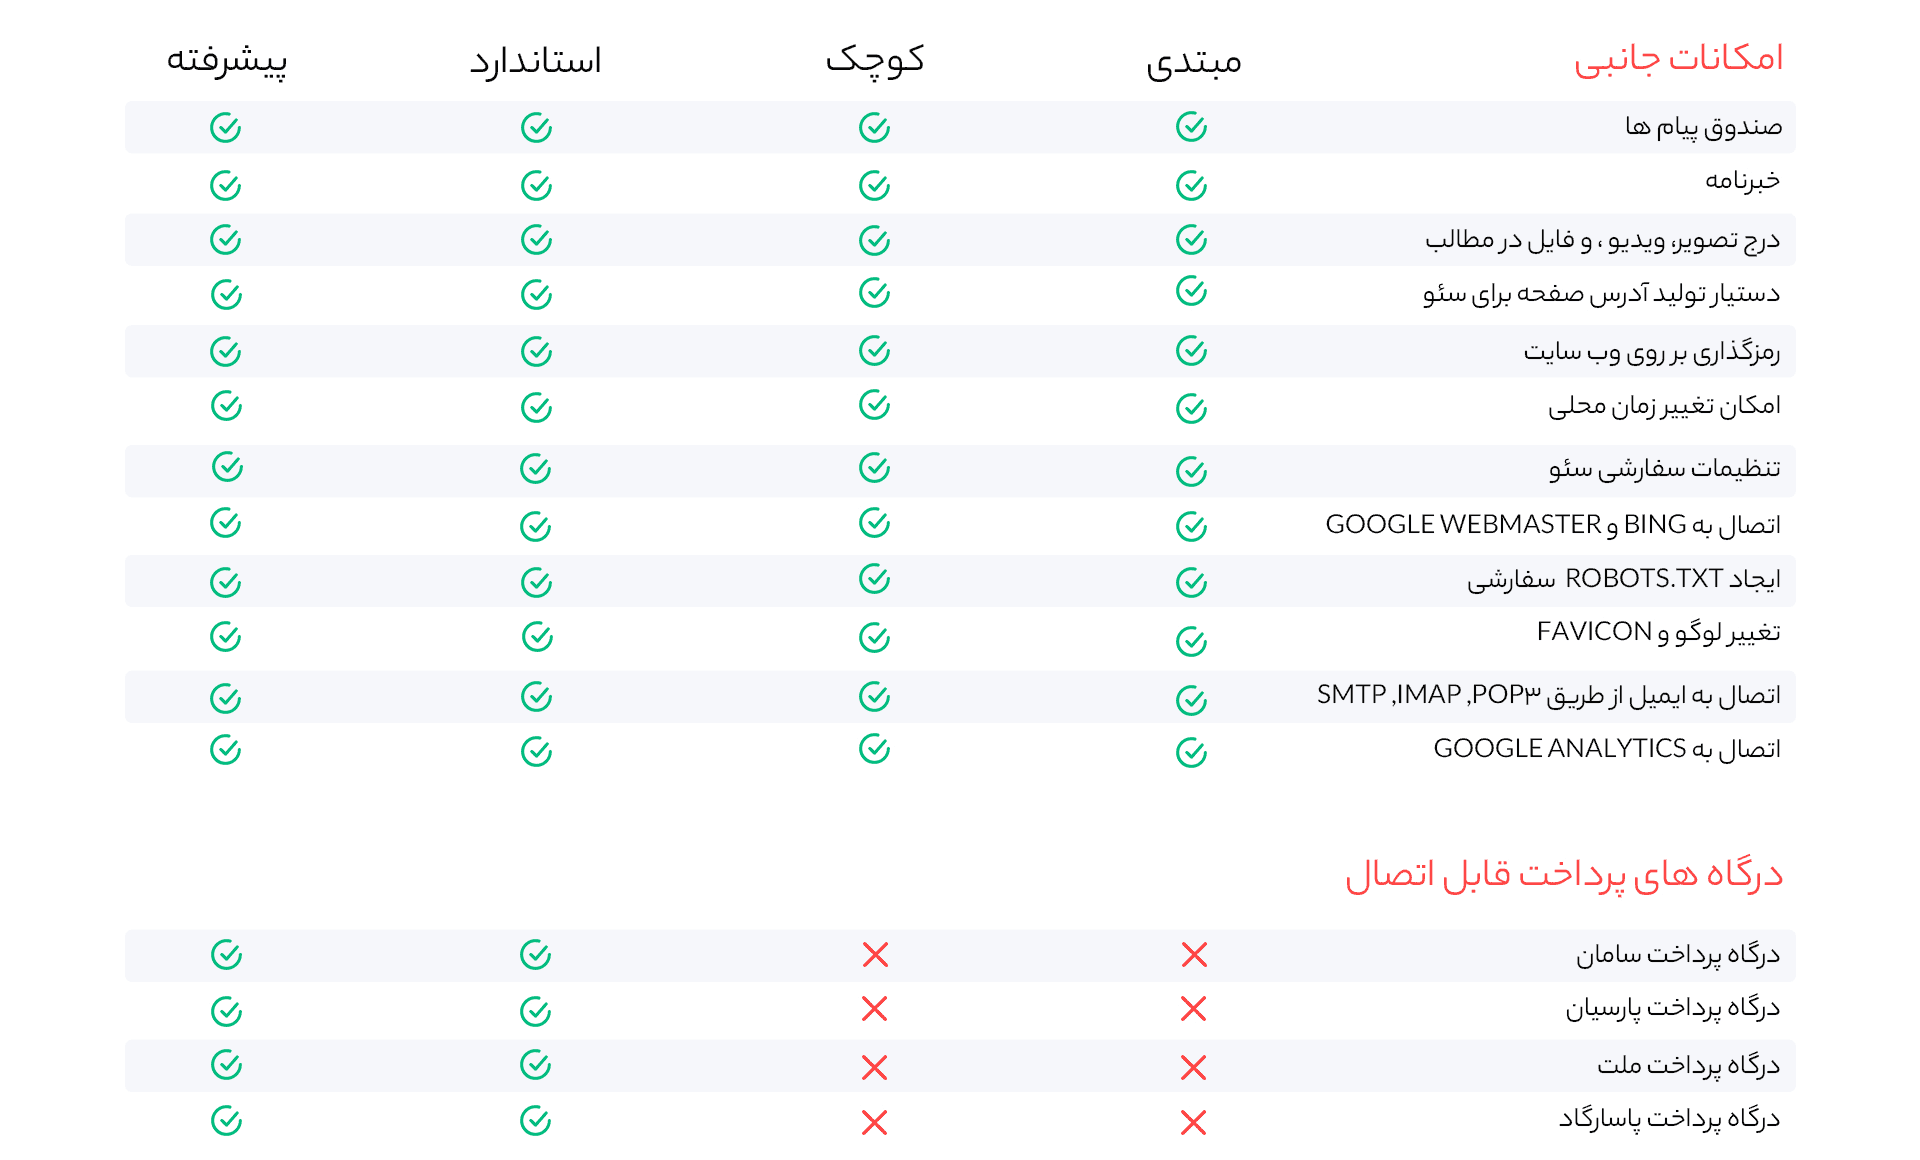 قیمت طراحی سایت در تهران